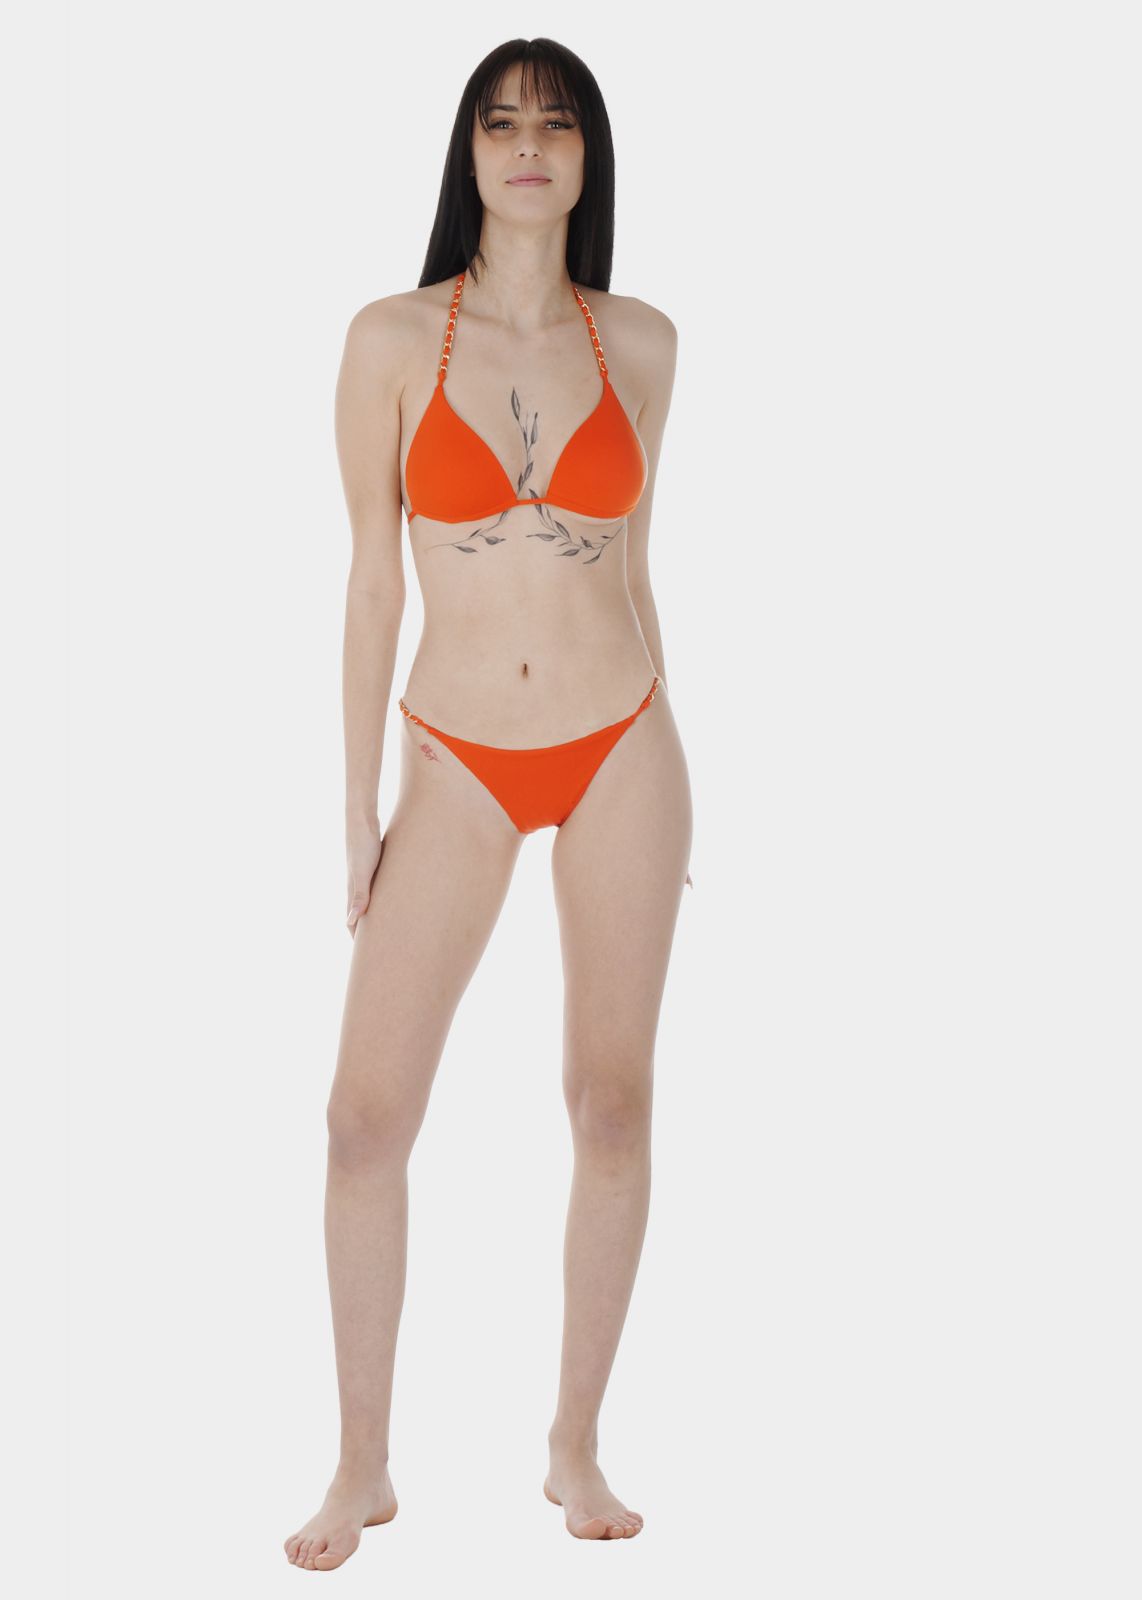 Γυναικείο σετ μαγιό bikini τριγωνάκι μονόχρωμο push up ενίσχυση λεπτομέρειες αλυσίδας slip παρτό.Καλύπτει B CUP ΠΟΡΤΟΚΑΛΙ